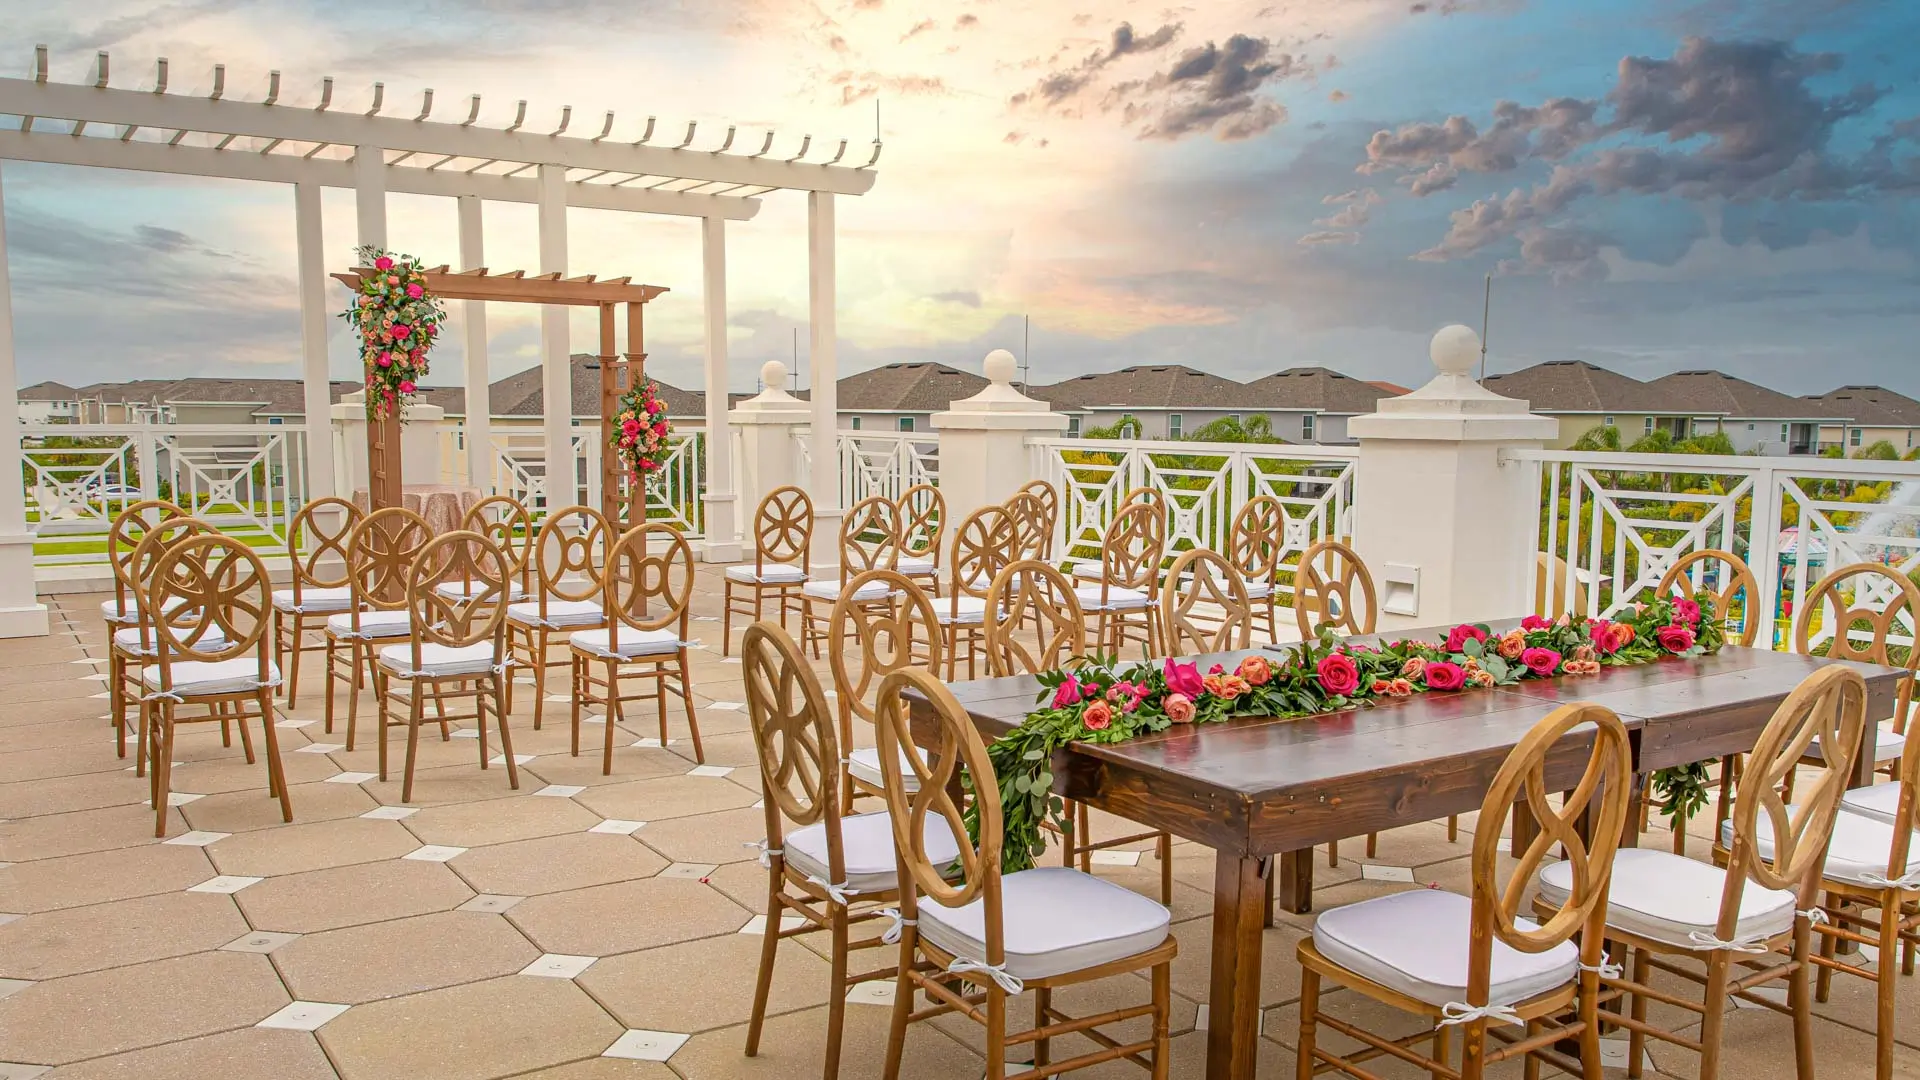 Encorela terrasse extérieure du club house décorée pour un mariage au coucher du soleil.